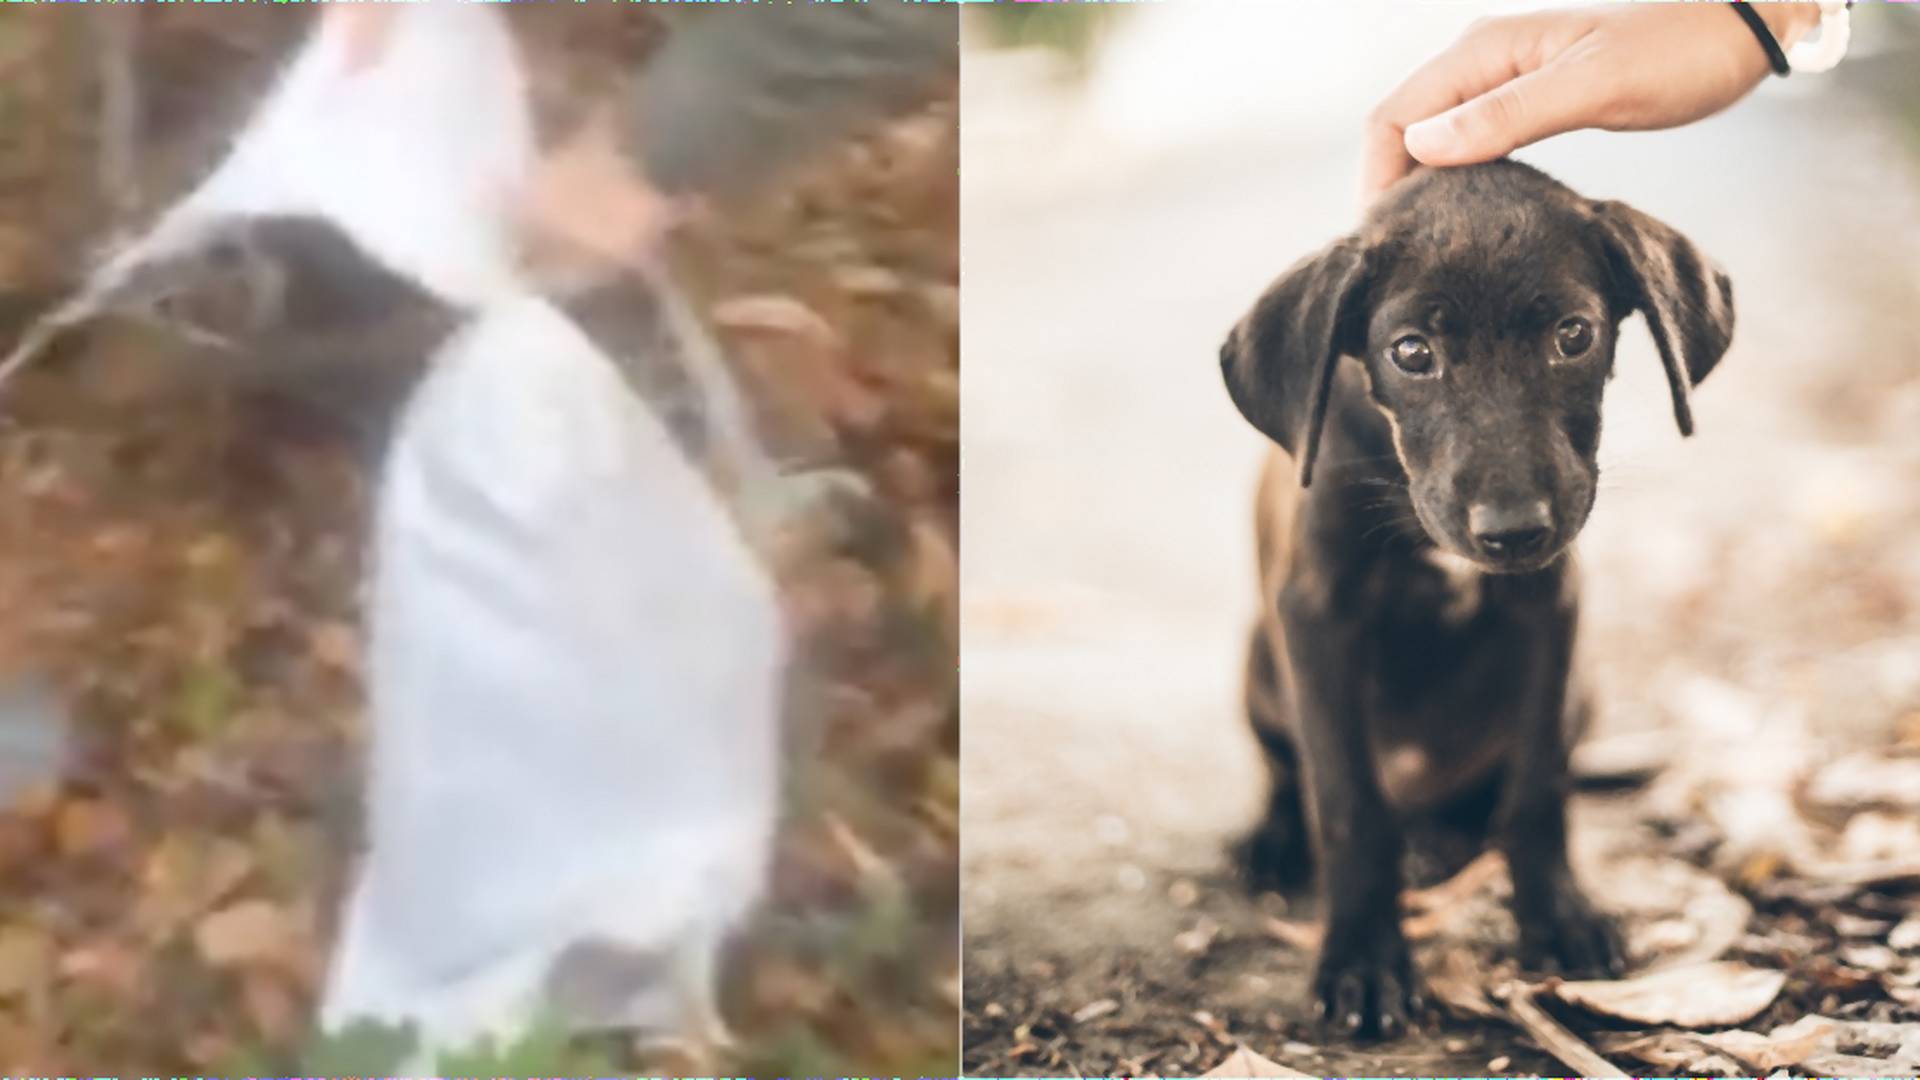 V Nitrianskom kraji zachránili psa, ktorého niekto zaviazal do vreca a vyhodil